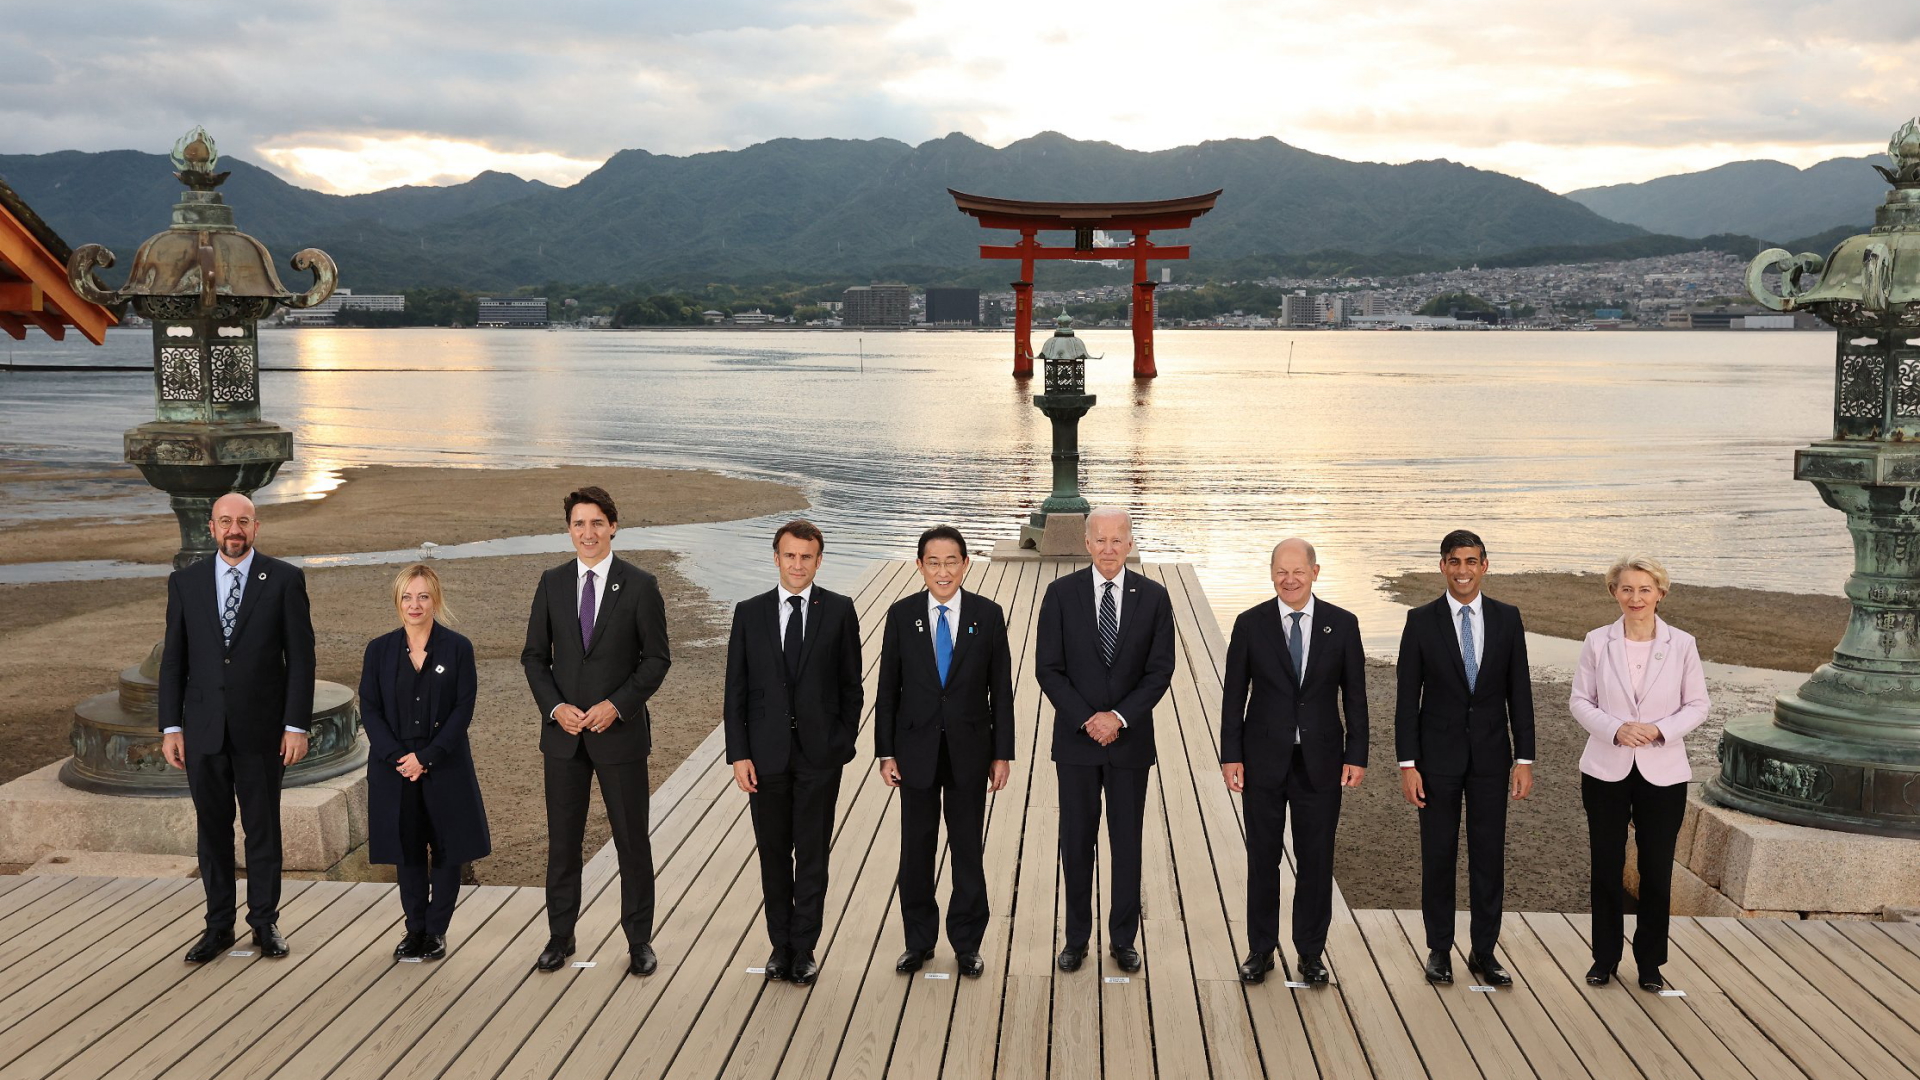 Gruppenbild der G7-Staats- und Regierungschefs am Itsukushima-Schrein auf der Insel Miyajima nahe Hiroshima, im Hintergrund die untergehende Sonne.